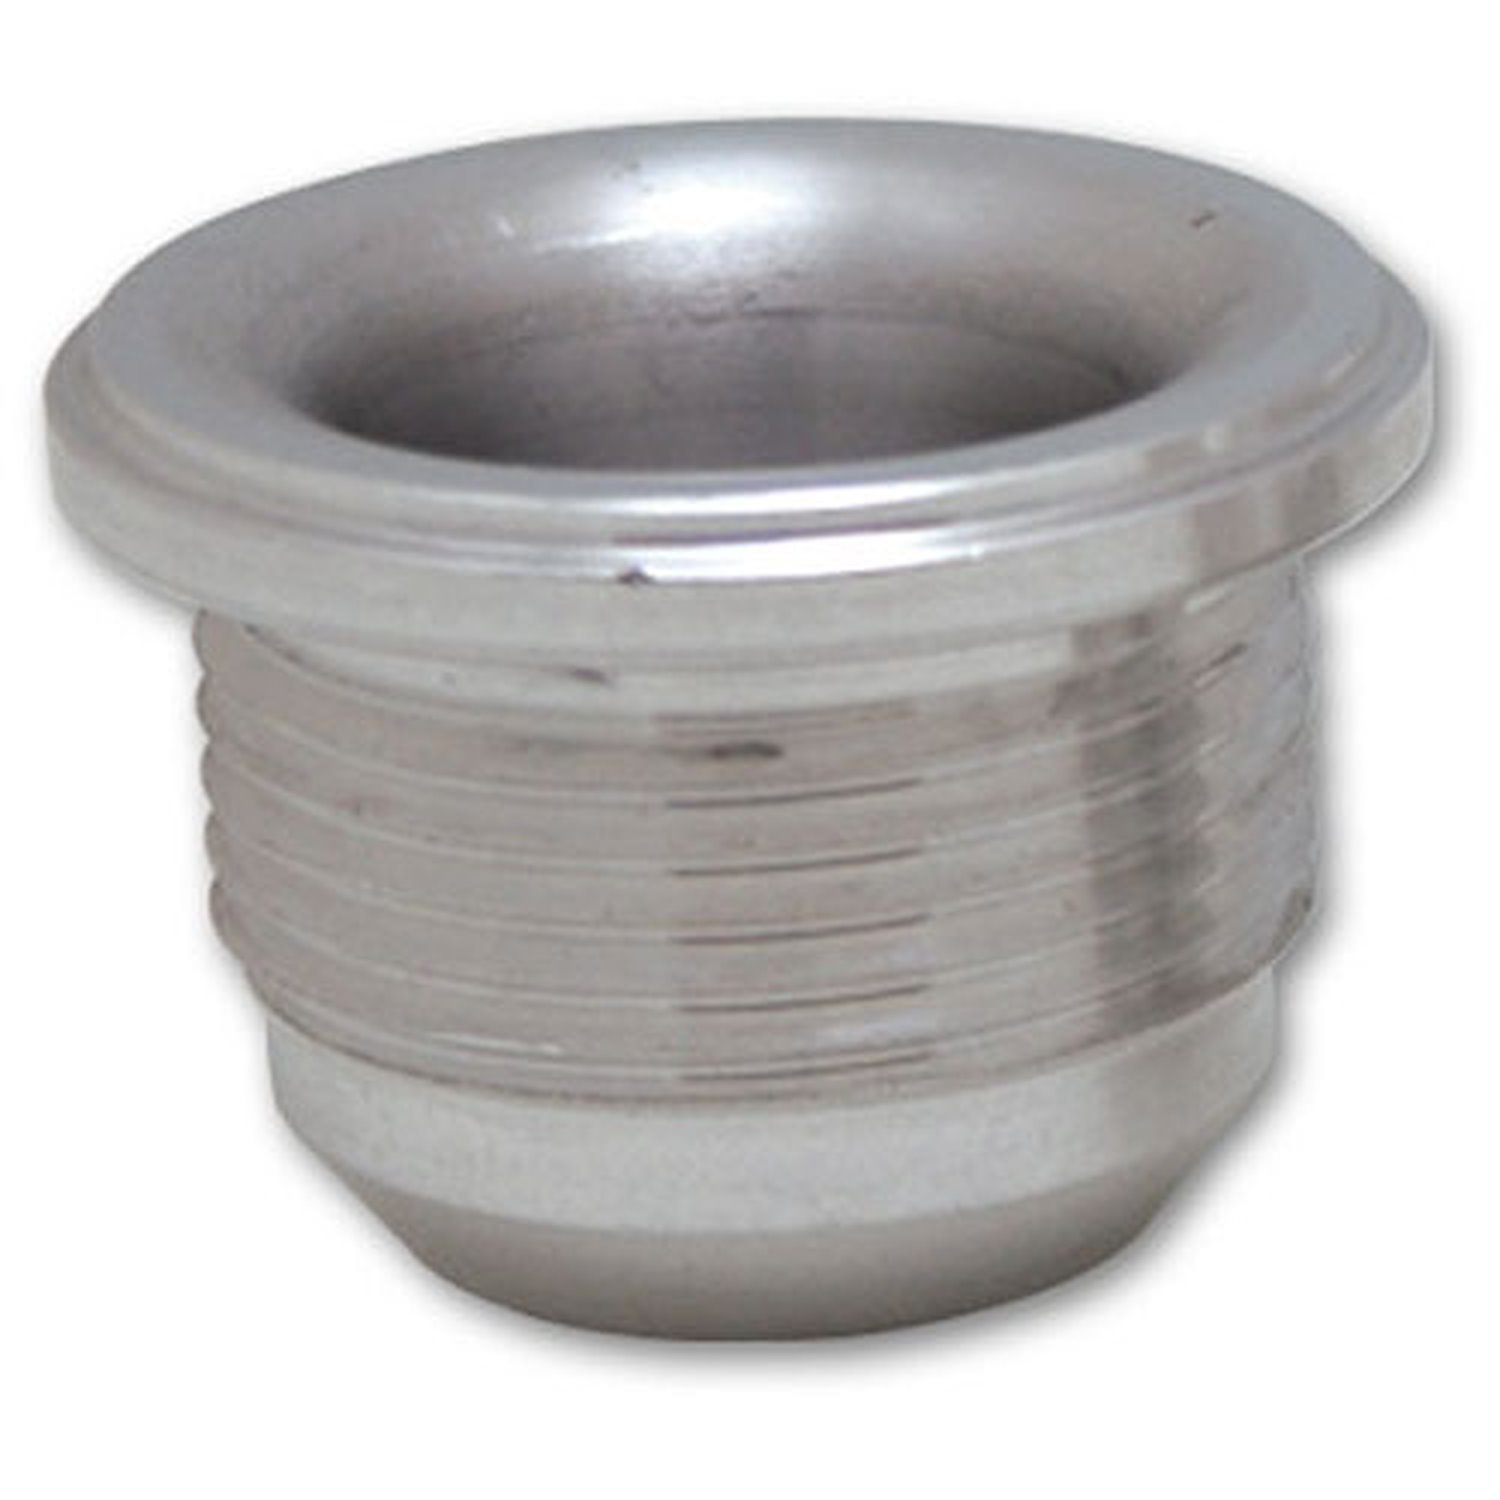 Male -12AN Aluminum Weld Bung 1-1/16" - 12 SAE Thread